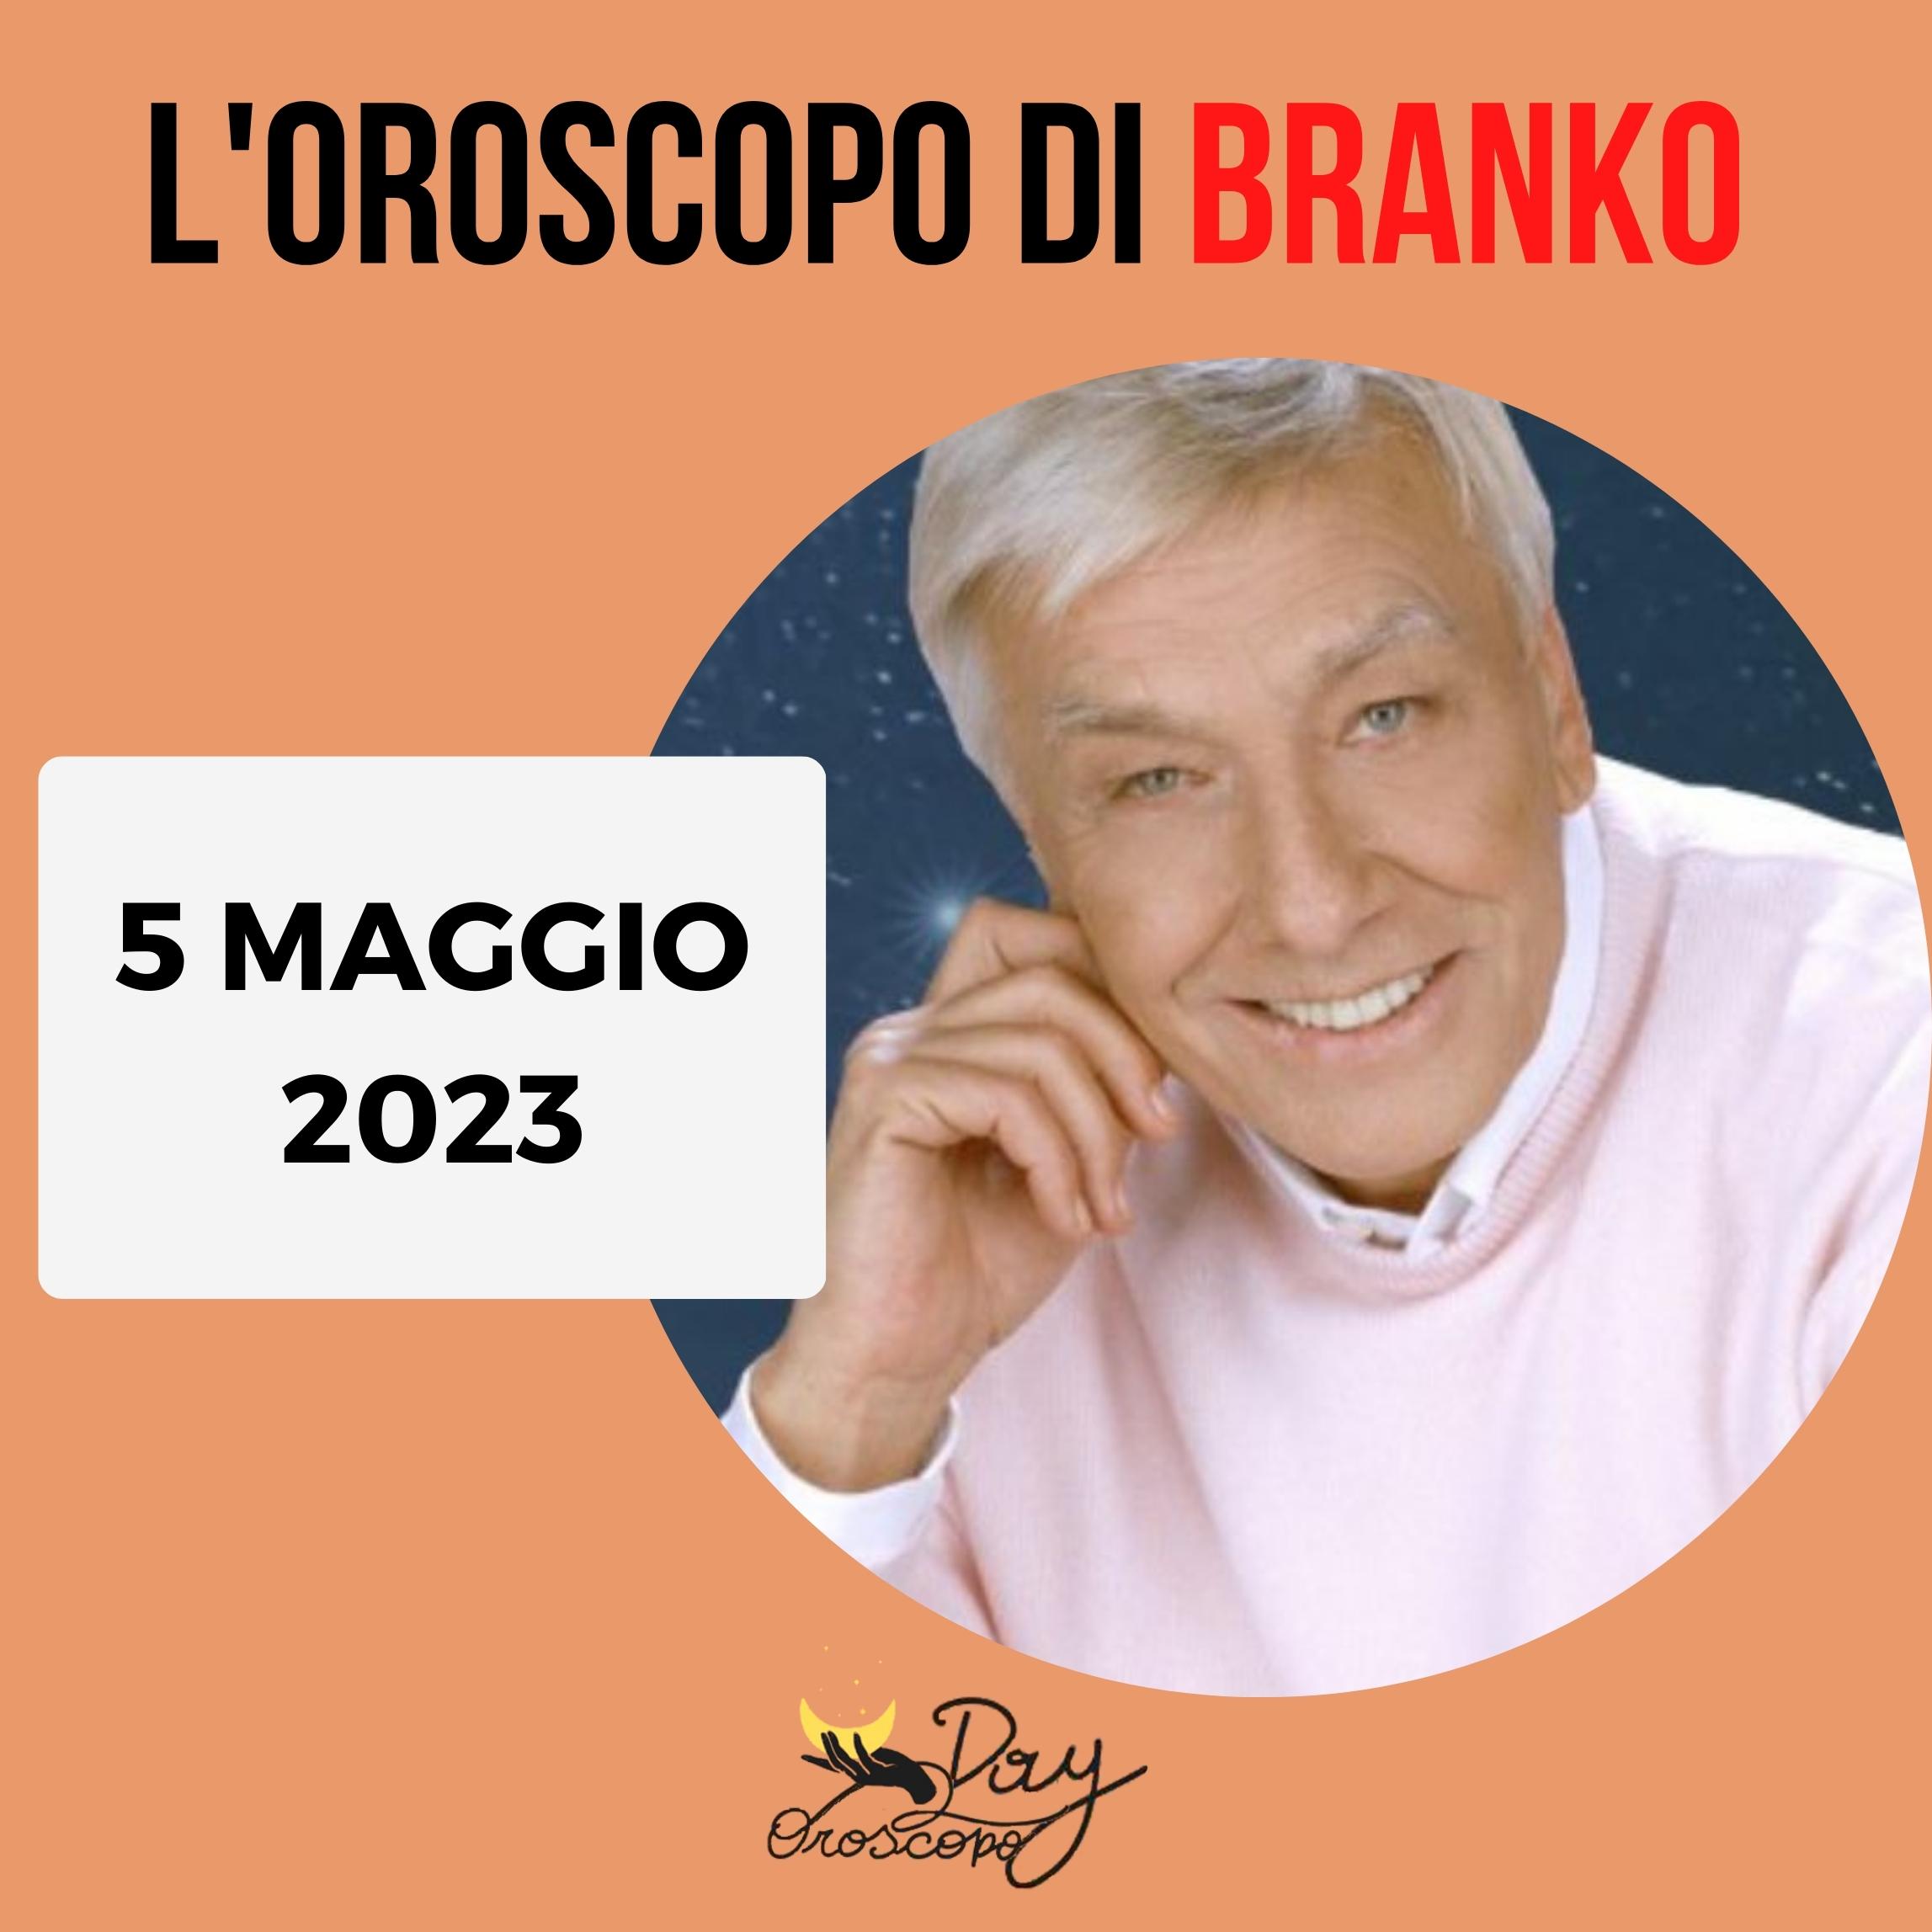 Oroscopo oggi domani Branko 5 maggio 2023